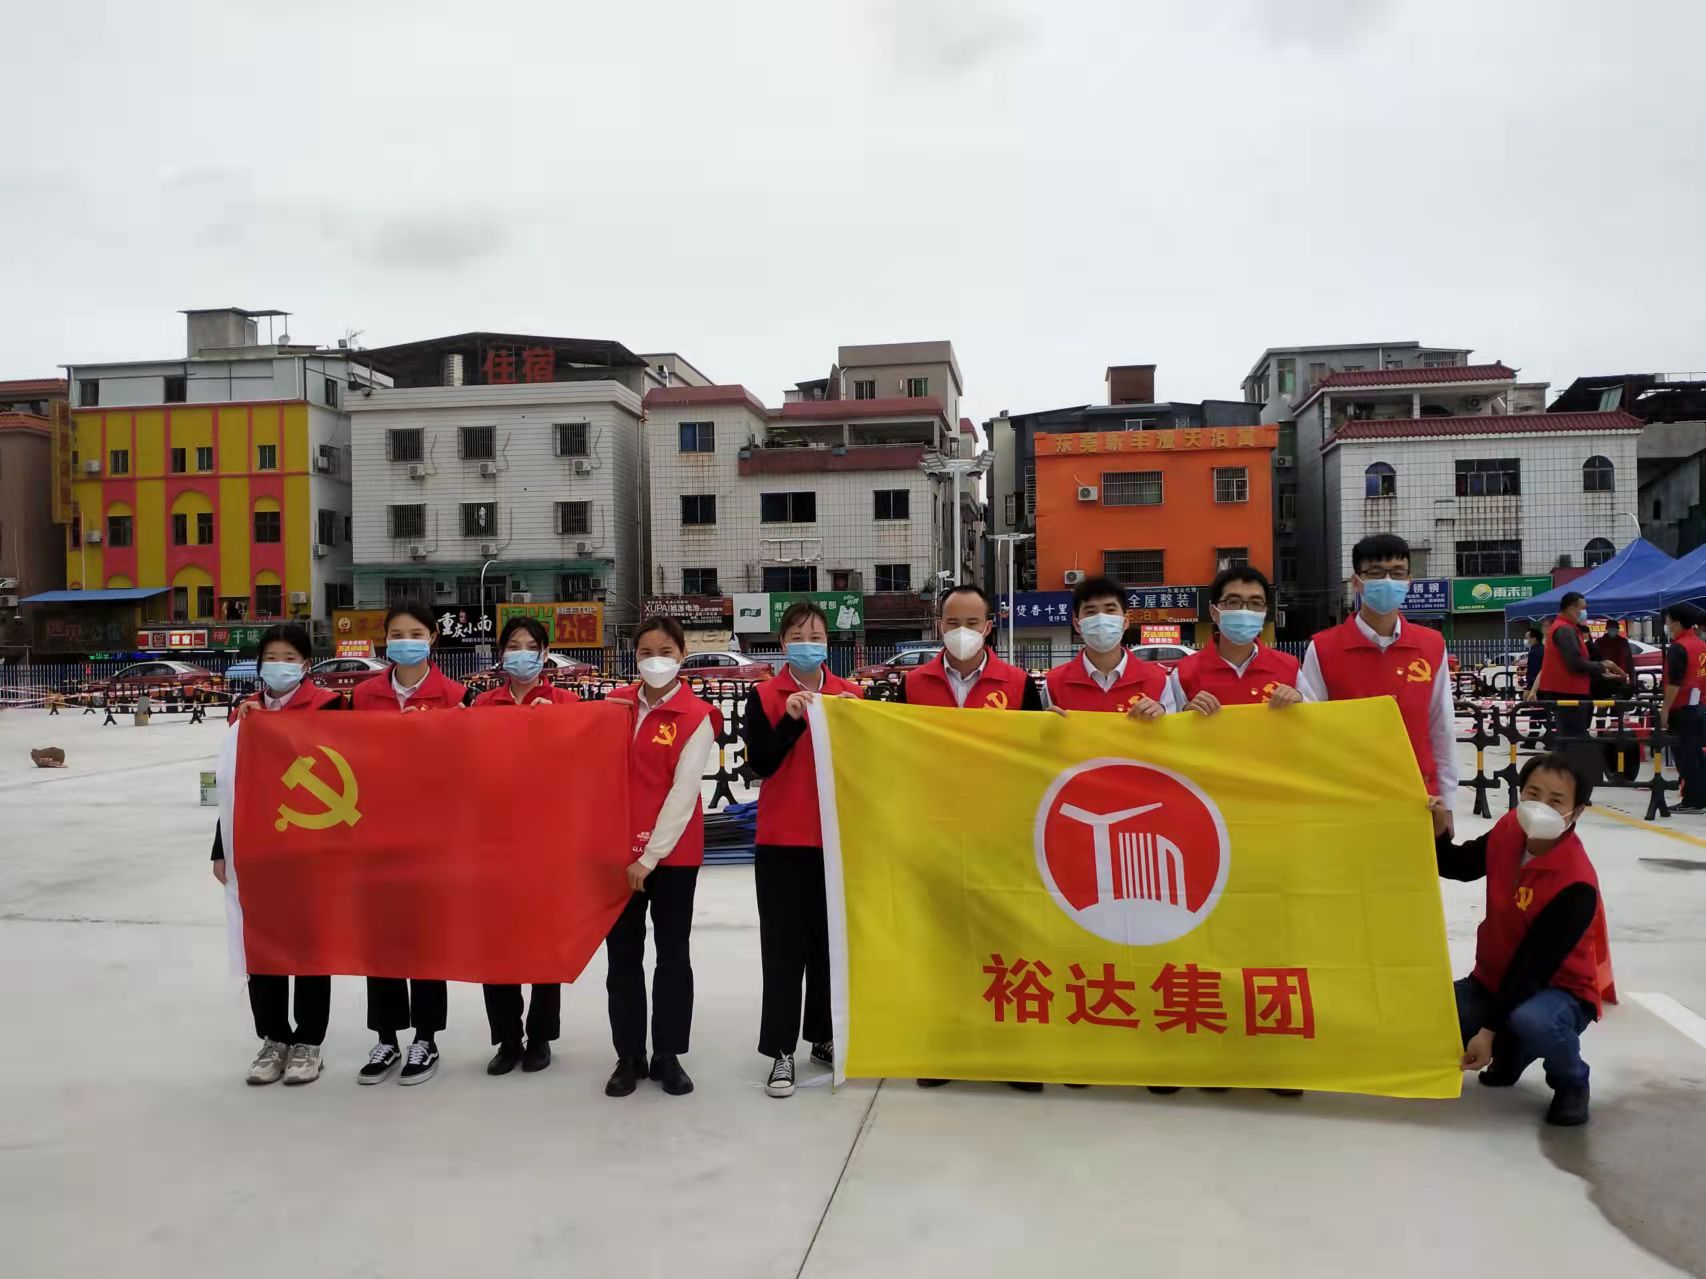 广东裕达建设集团有限公司党支部协助主山社区为防疫工作尽一份力量